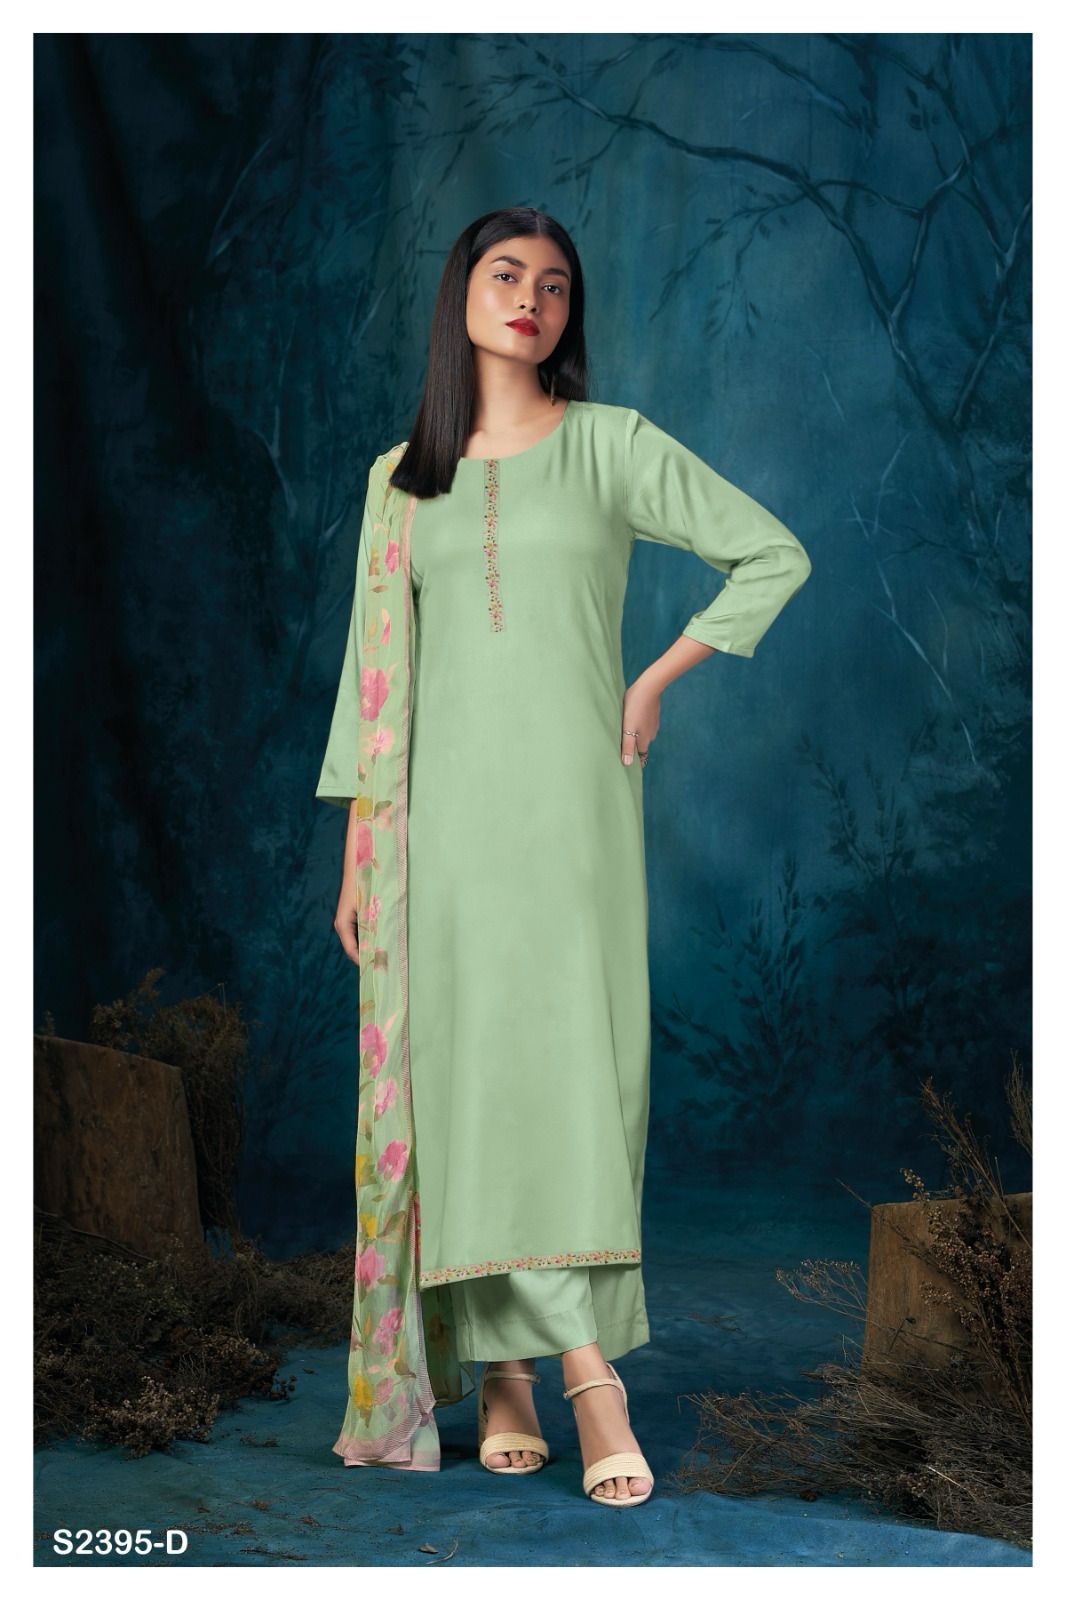 Jiyana-2395 Ganga Cotton Plazzo Style Suits